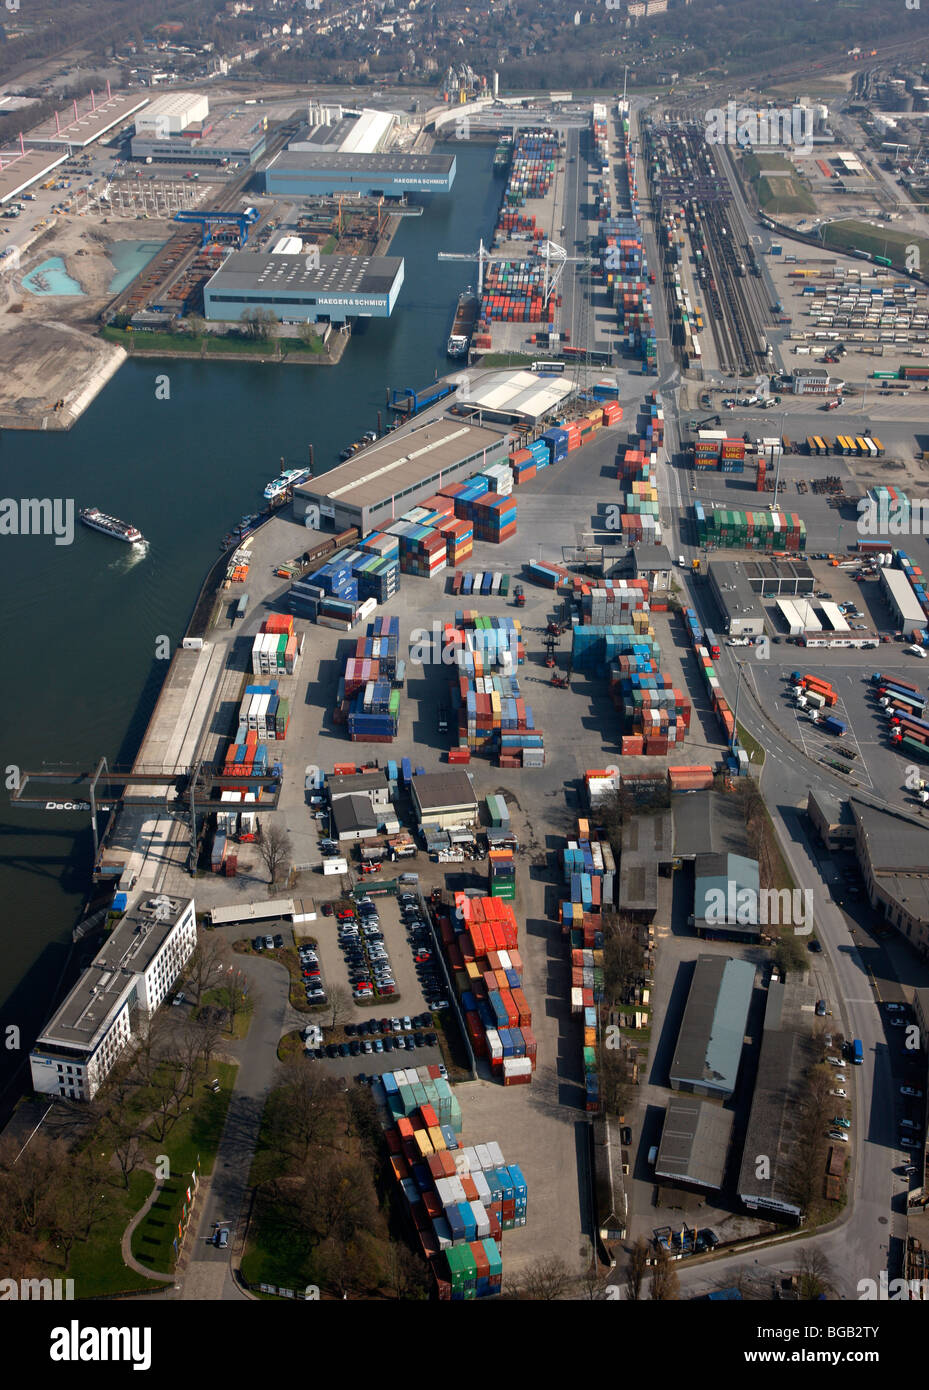 Duisport Hafen und Logistikzentrum am Rhein, größten Binnenhafen der Welt. Duisburg, NRW, Deutschland, Europa. Stockfoto